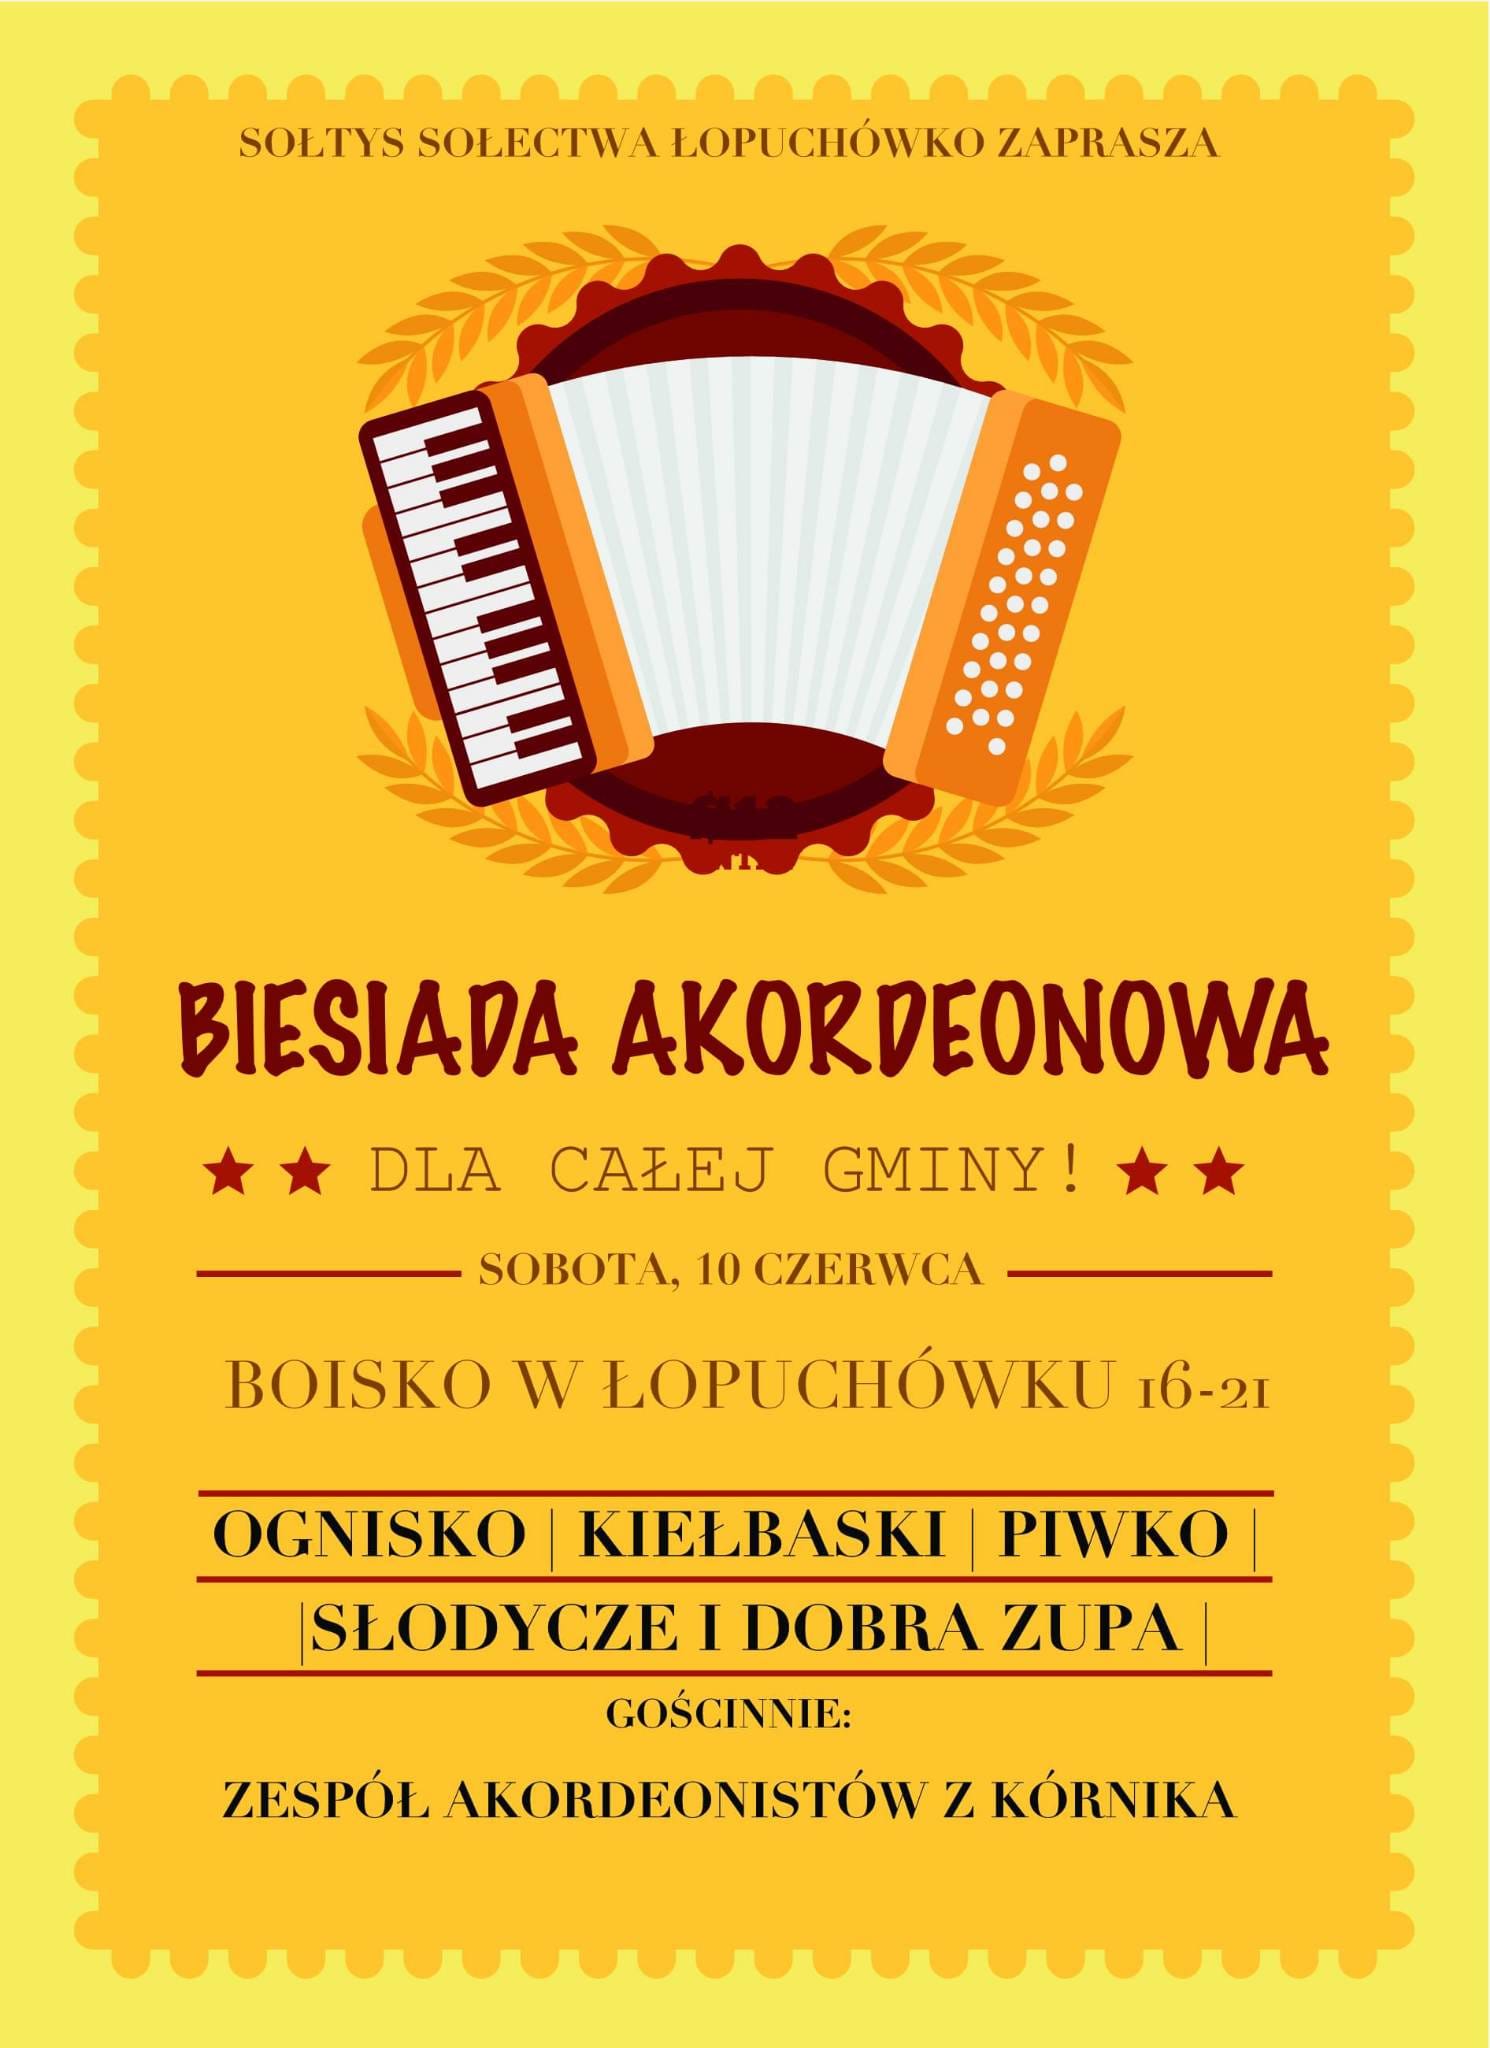 Biesiada akordeonowa w Łopuchówku, 10 czerwca, sobota, wstęp wolny